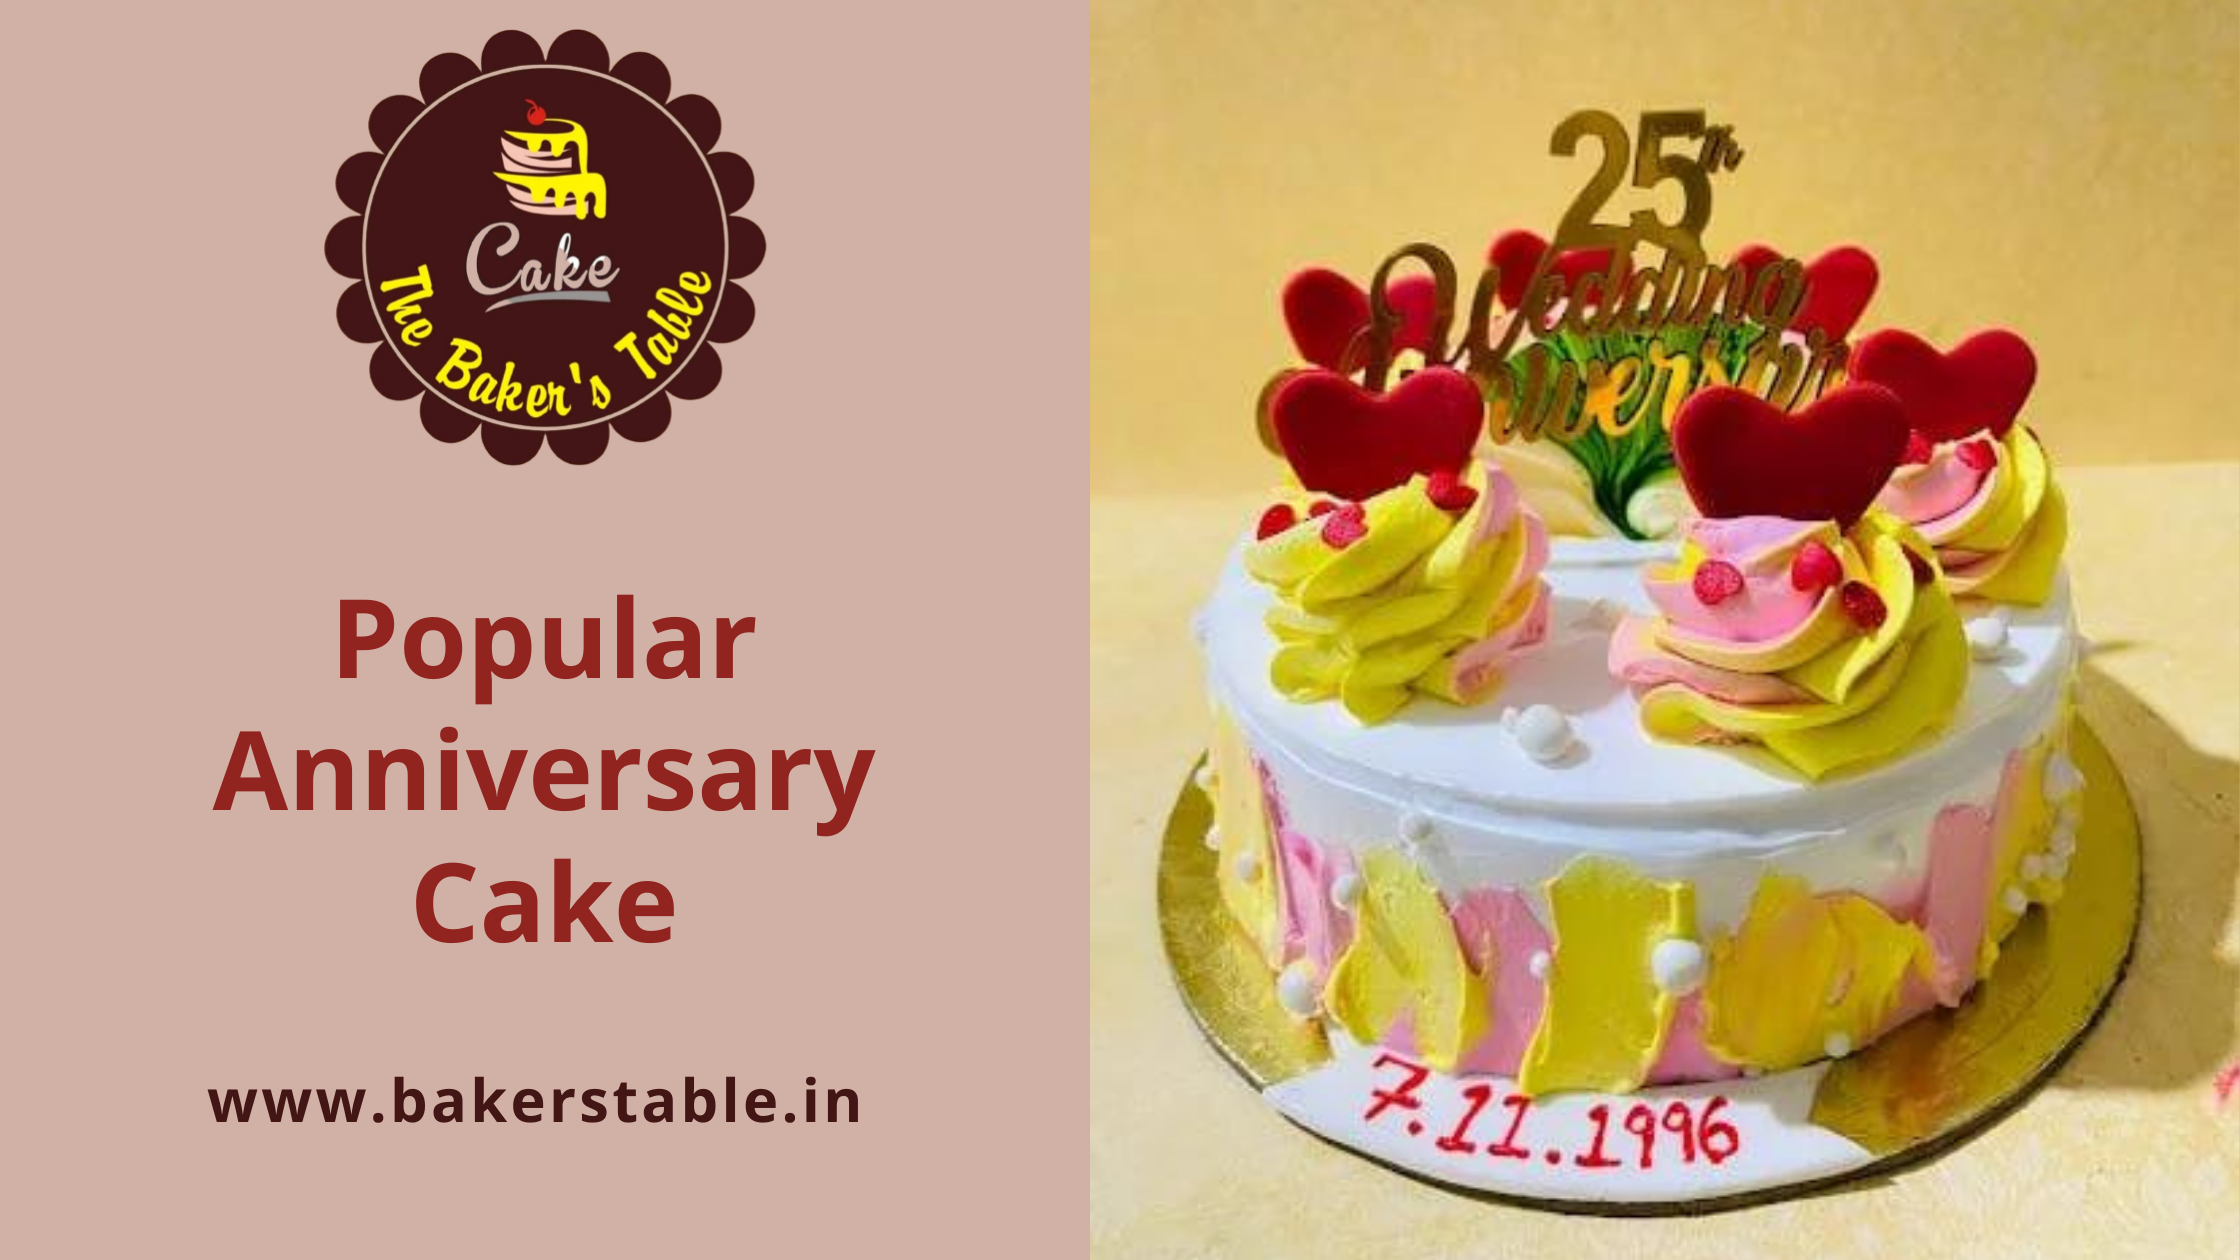 Popular Anniversary Cake